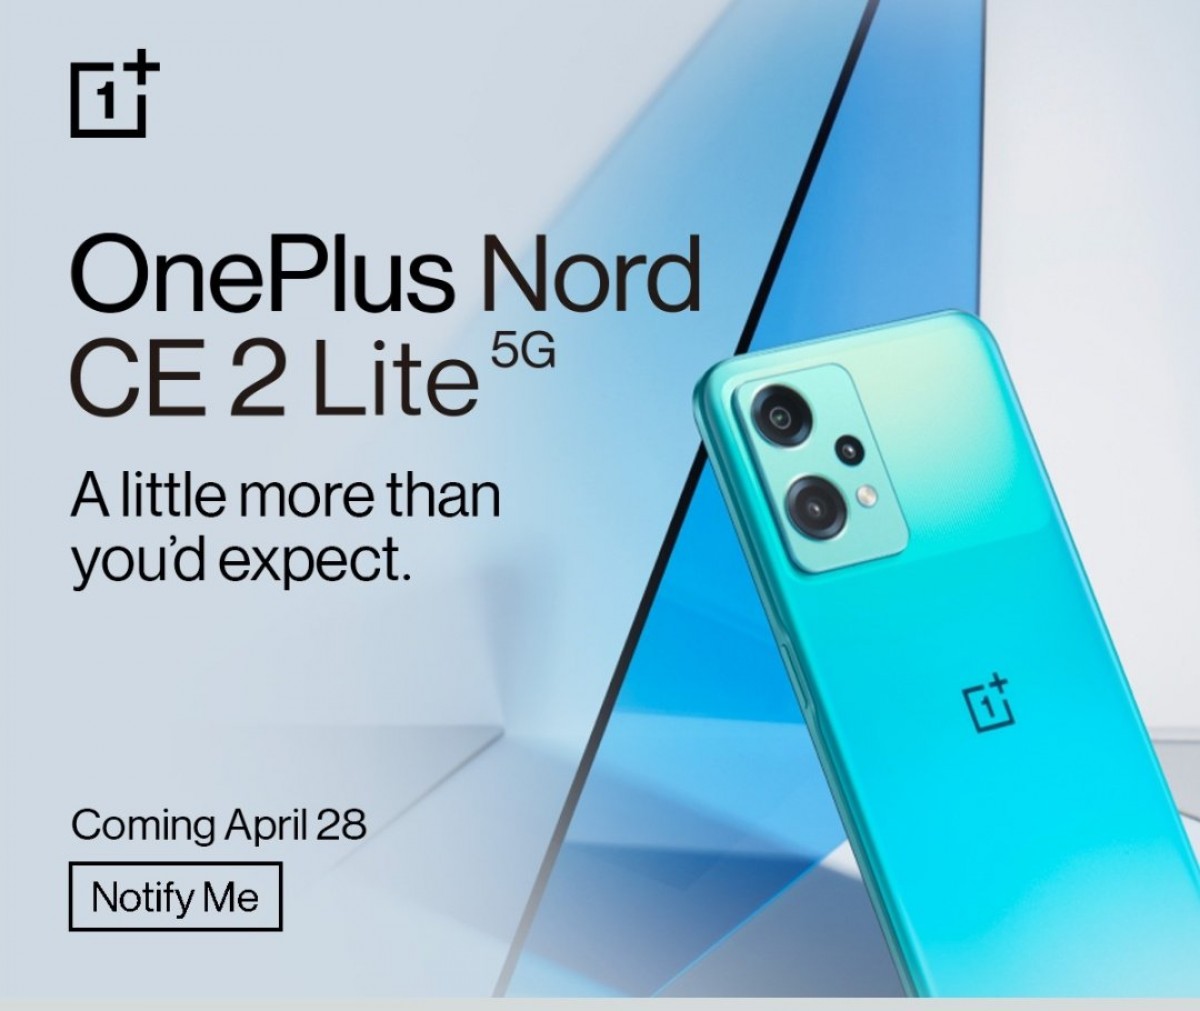 سيصل OnePlus Nord CE 2 Lite 5G إلى الهند في 28 أبريل